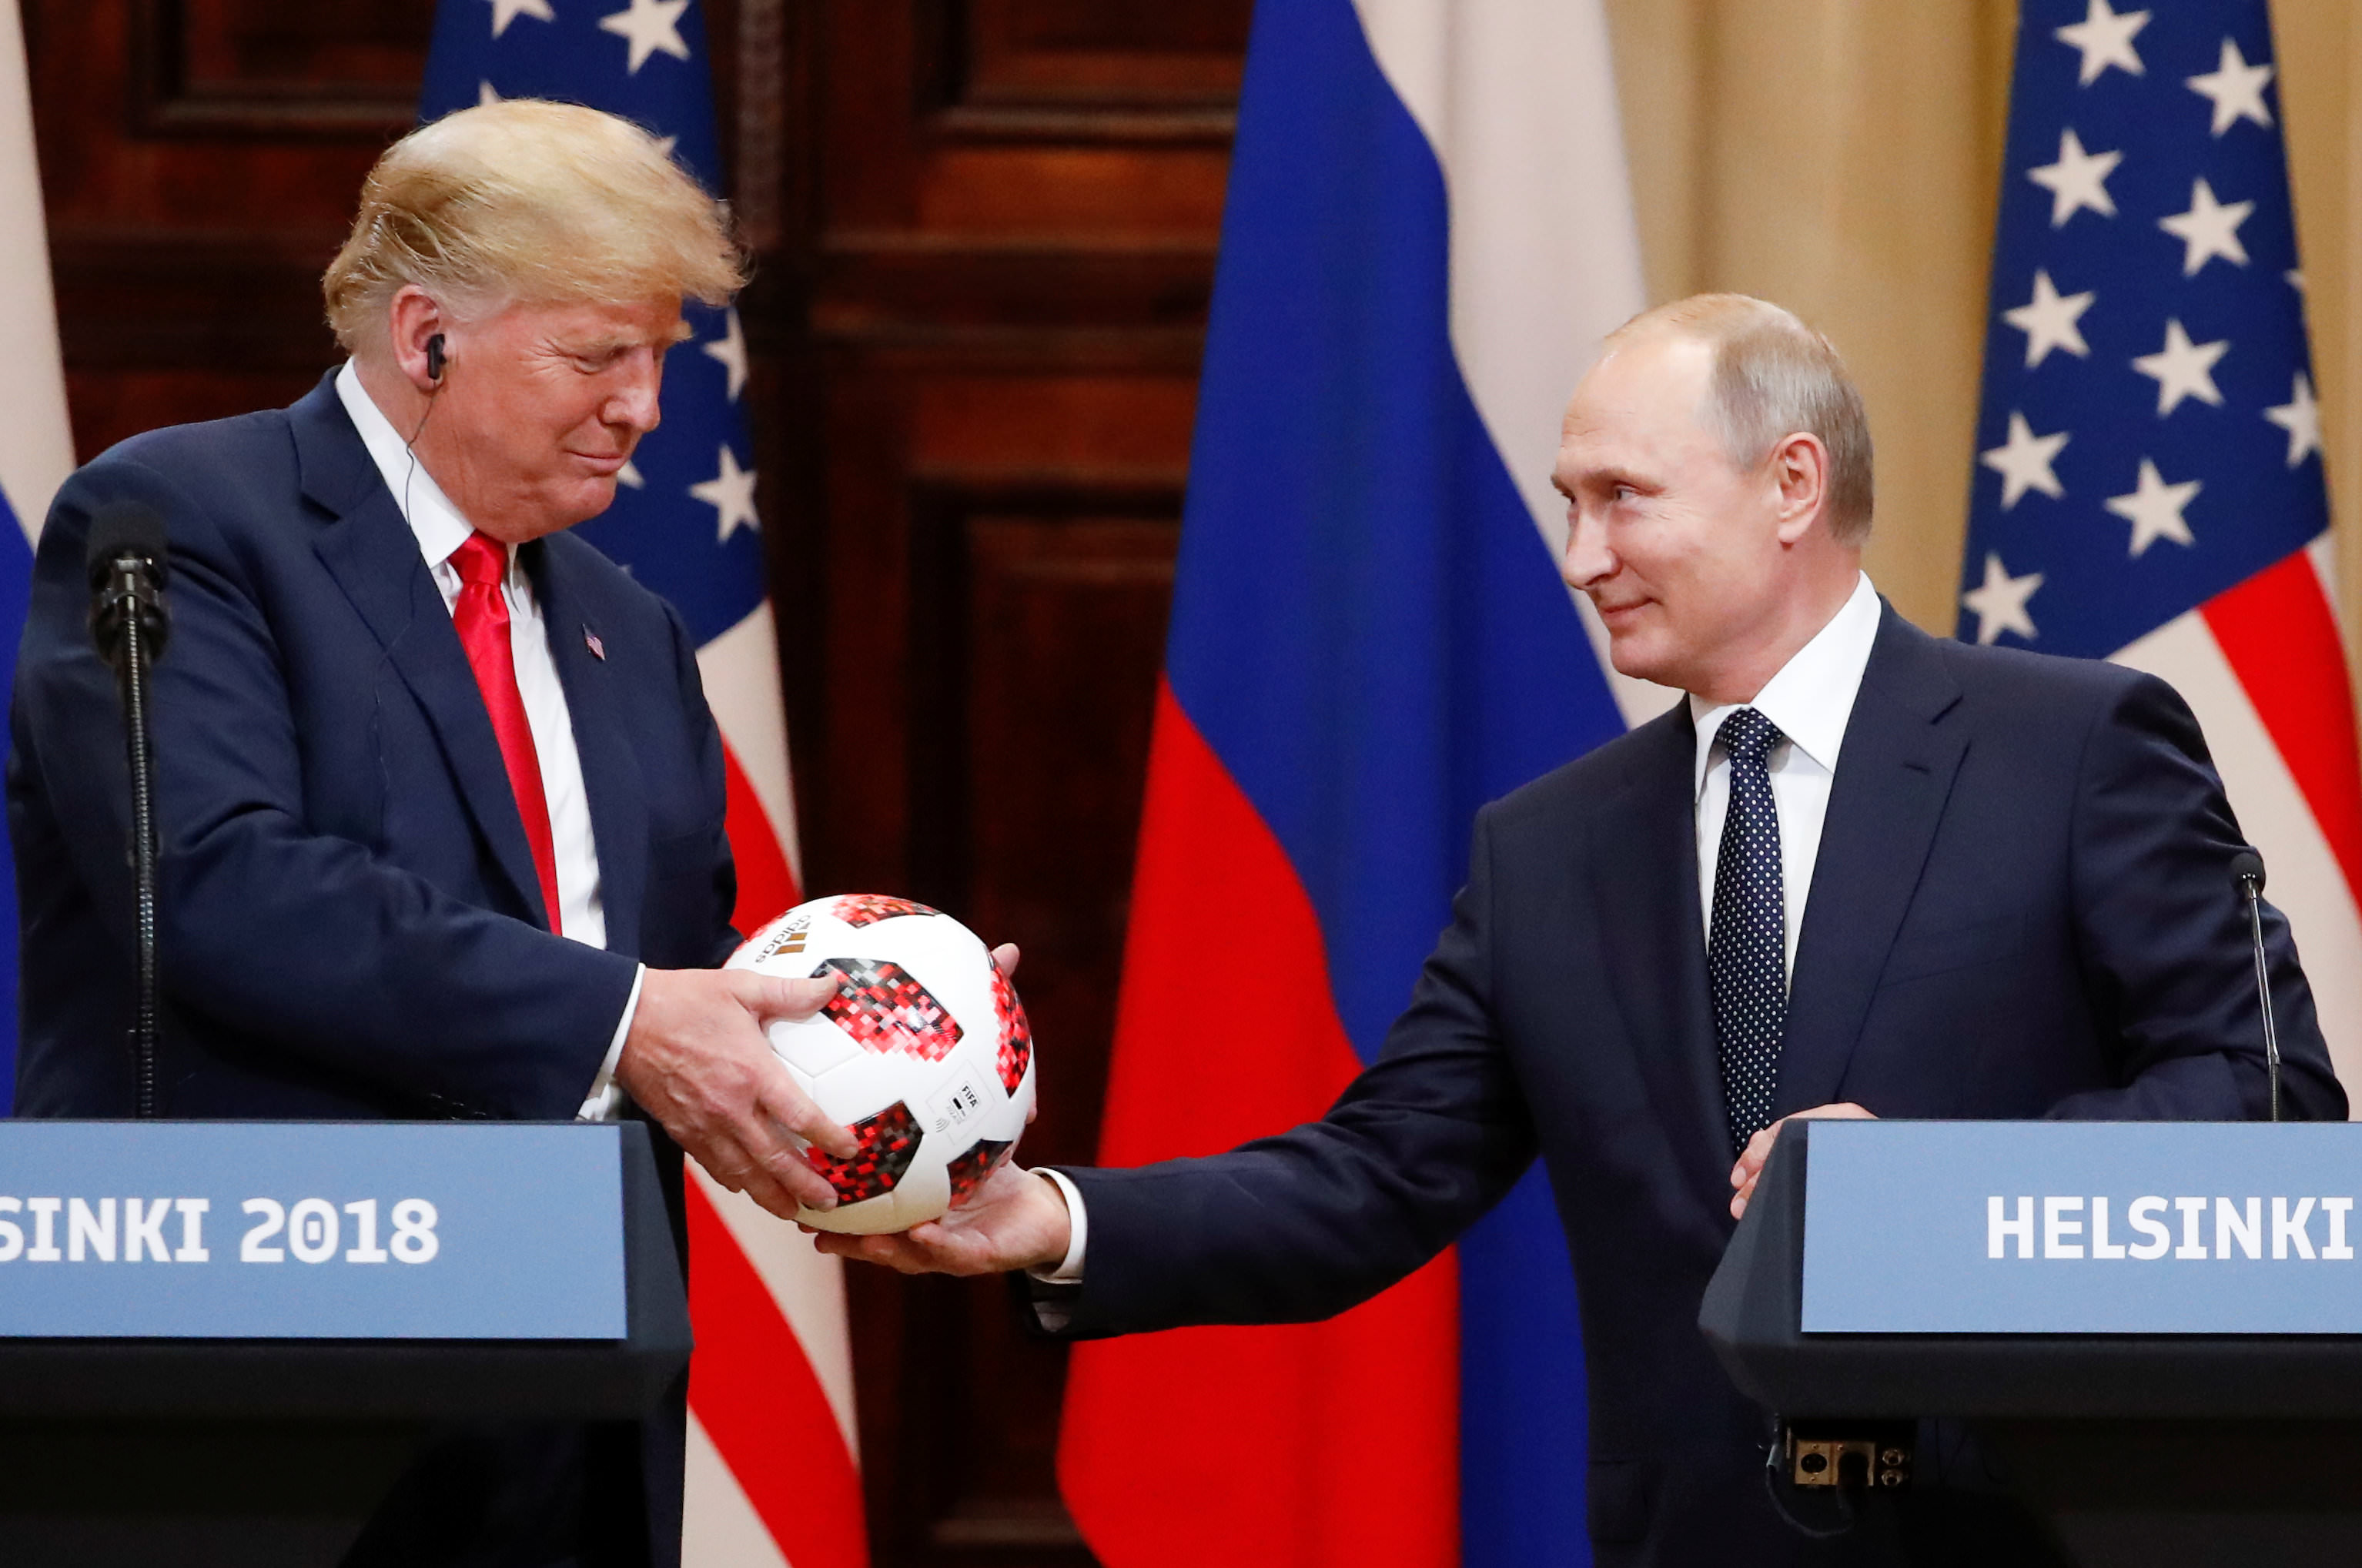 Putin regaló a Trump un balón del Mundial de Rusia 2018.